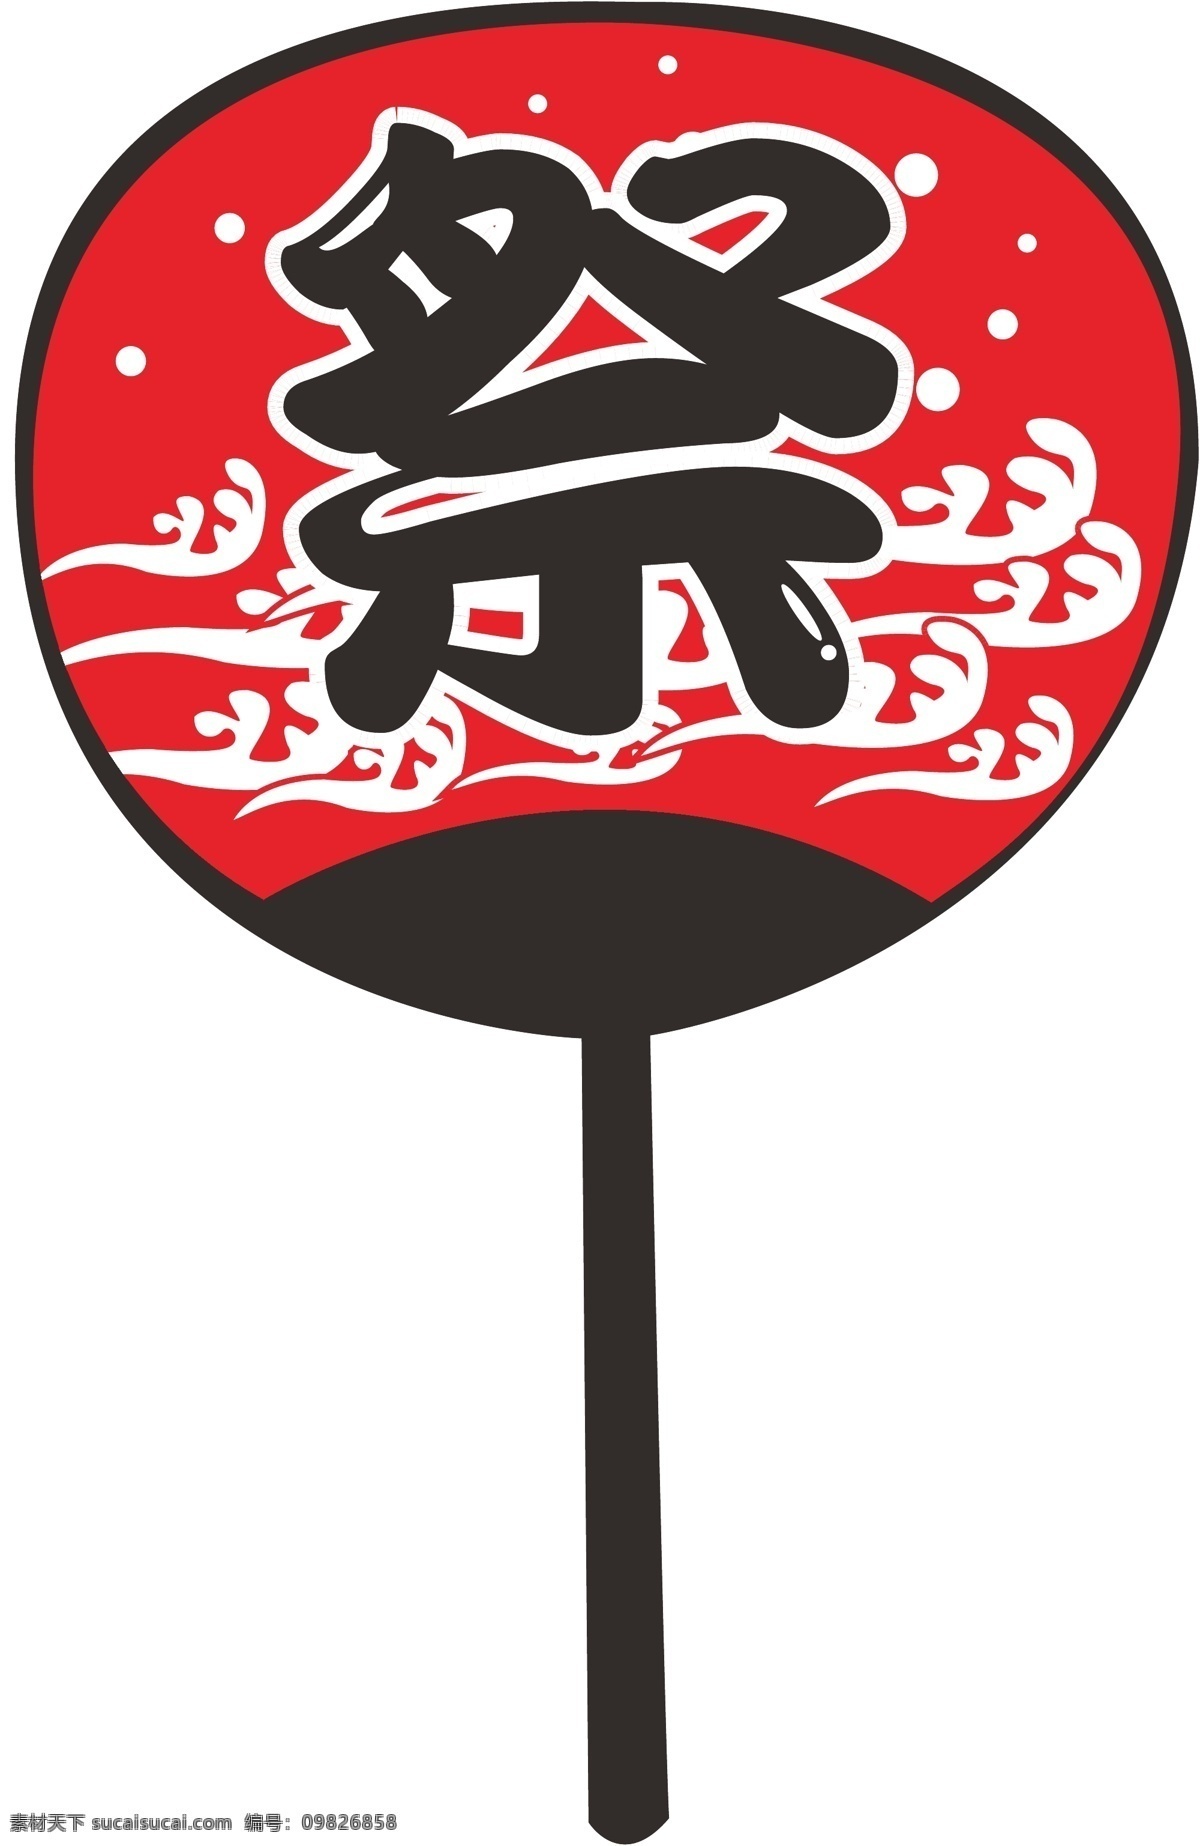 日本祭典扇子 日本 扇子 祭典 祭典扇子 祭 圓扇 传统文化 文化艺术 矢量